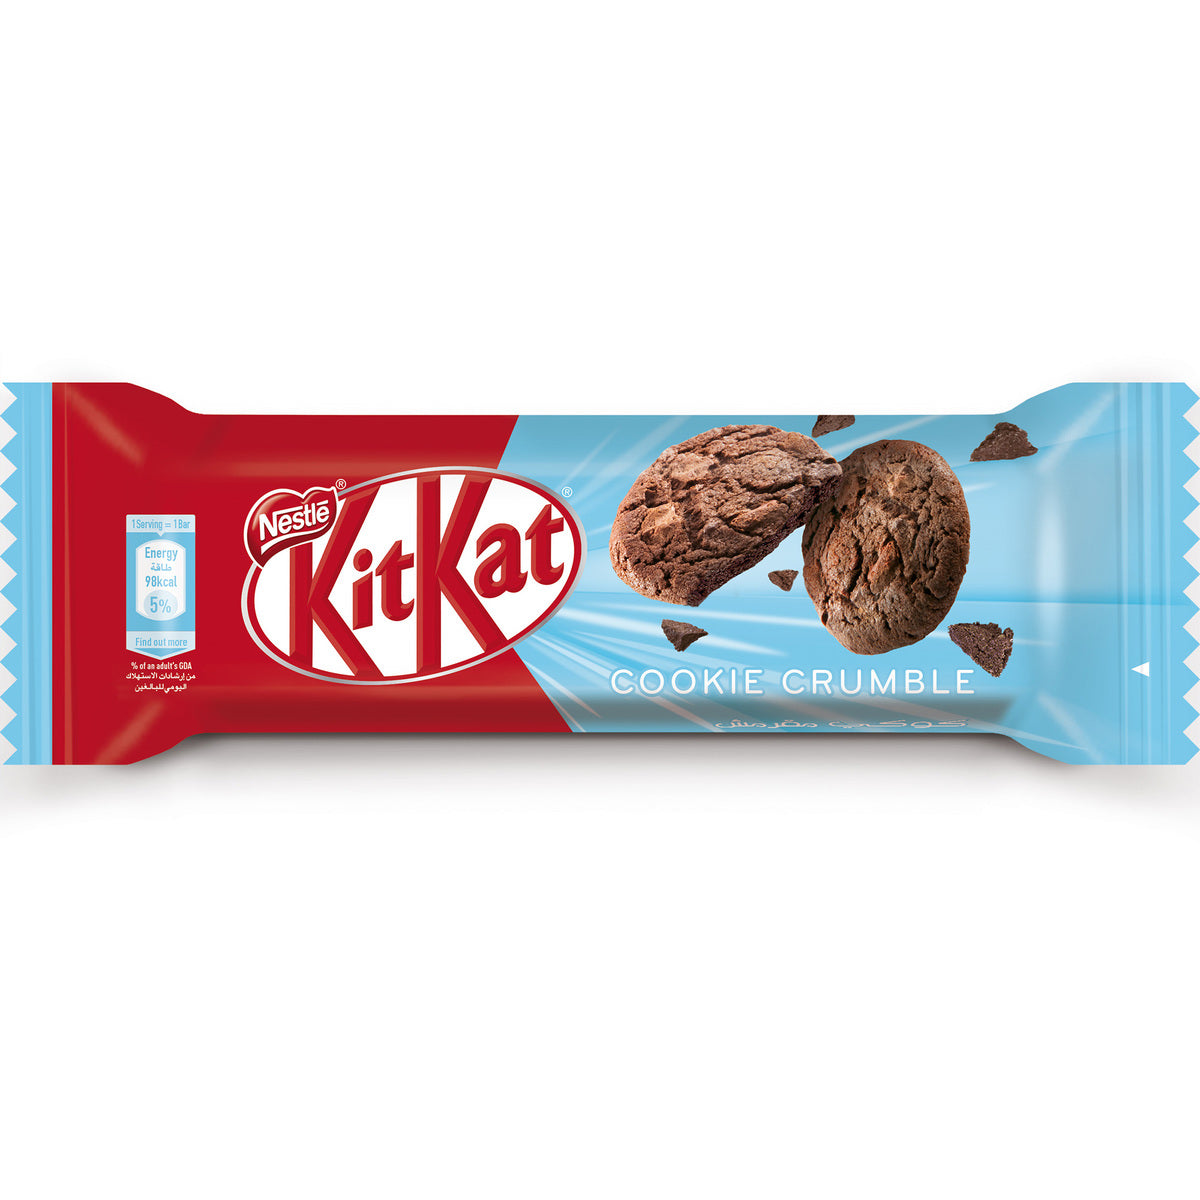 Nestle Kit Kat Crunchy Cookie pieces (Dubai Import) 19.5g